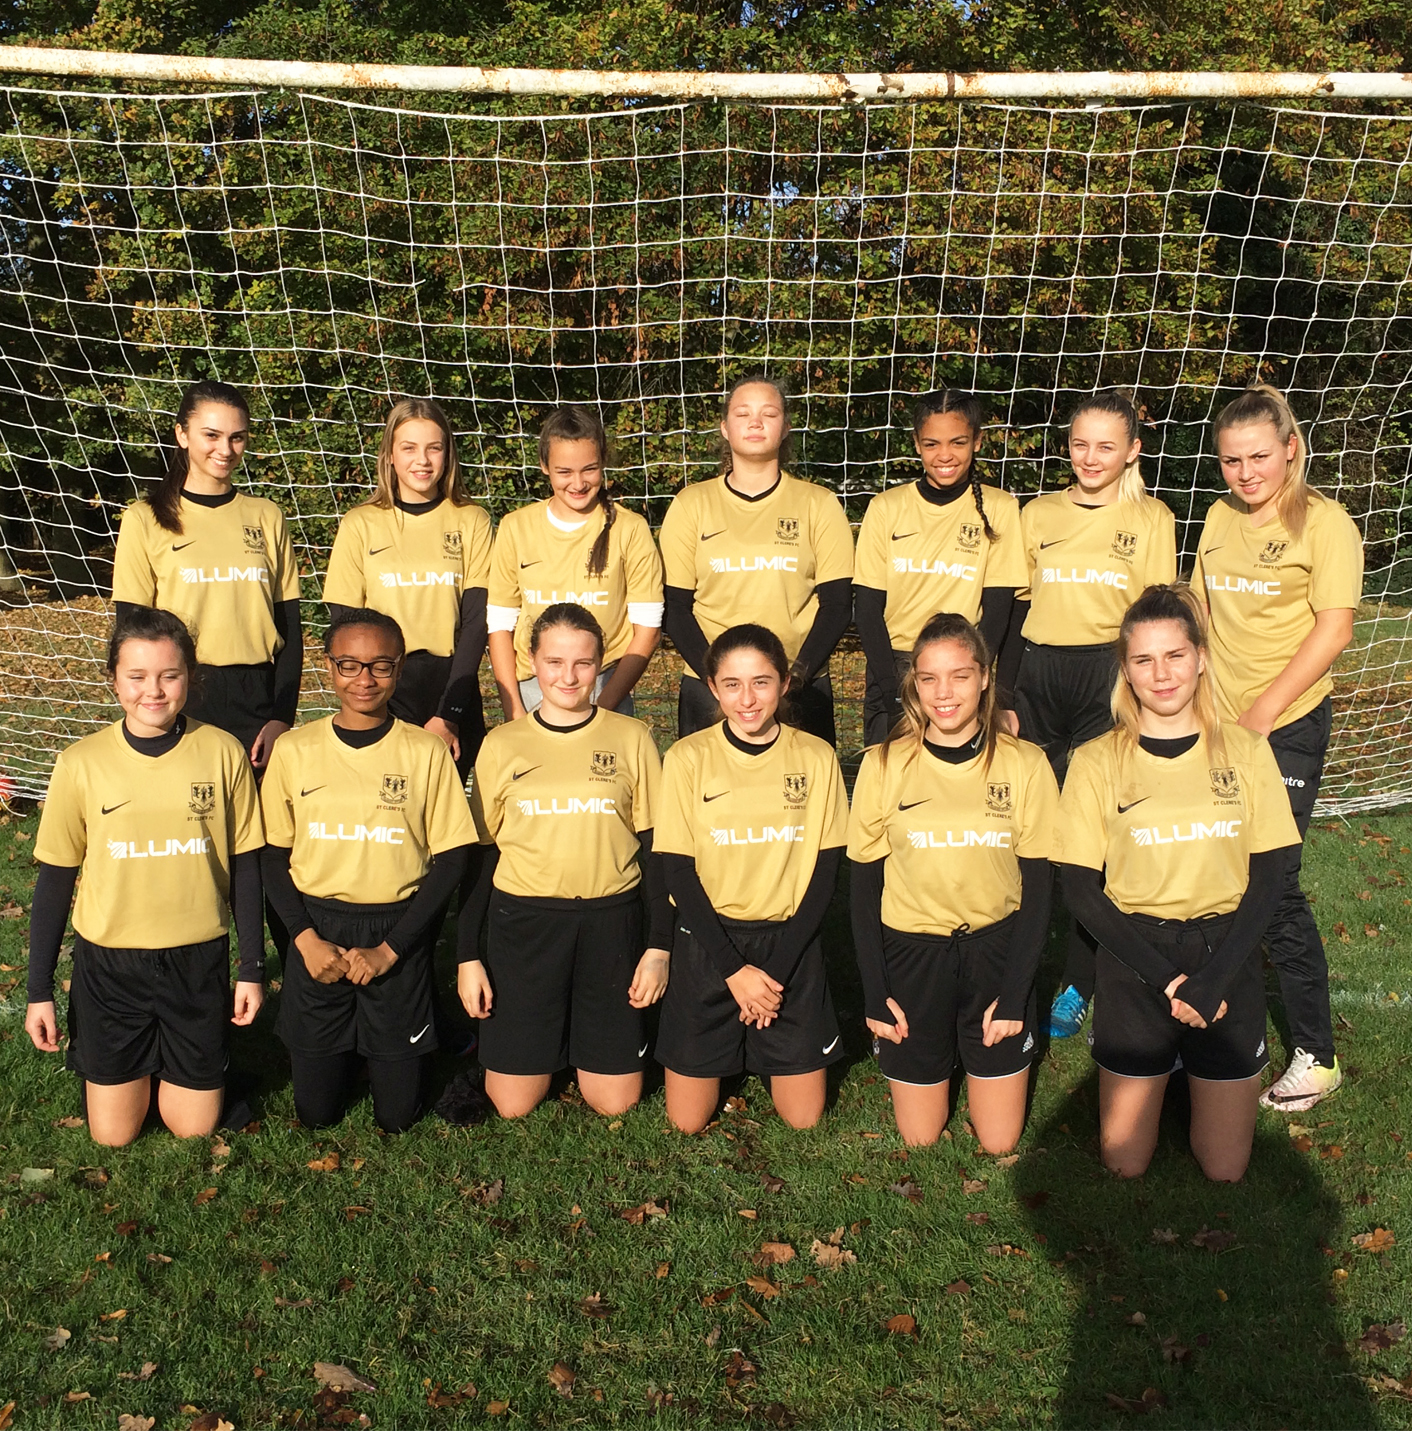 Lumic sponsor under 14's girls team St Clere's FC